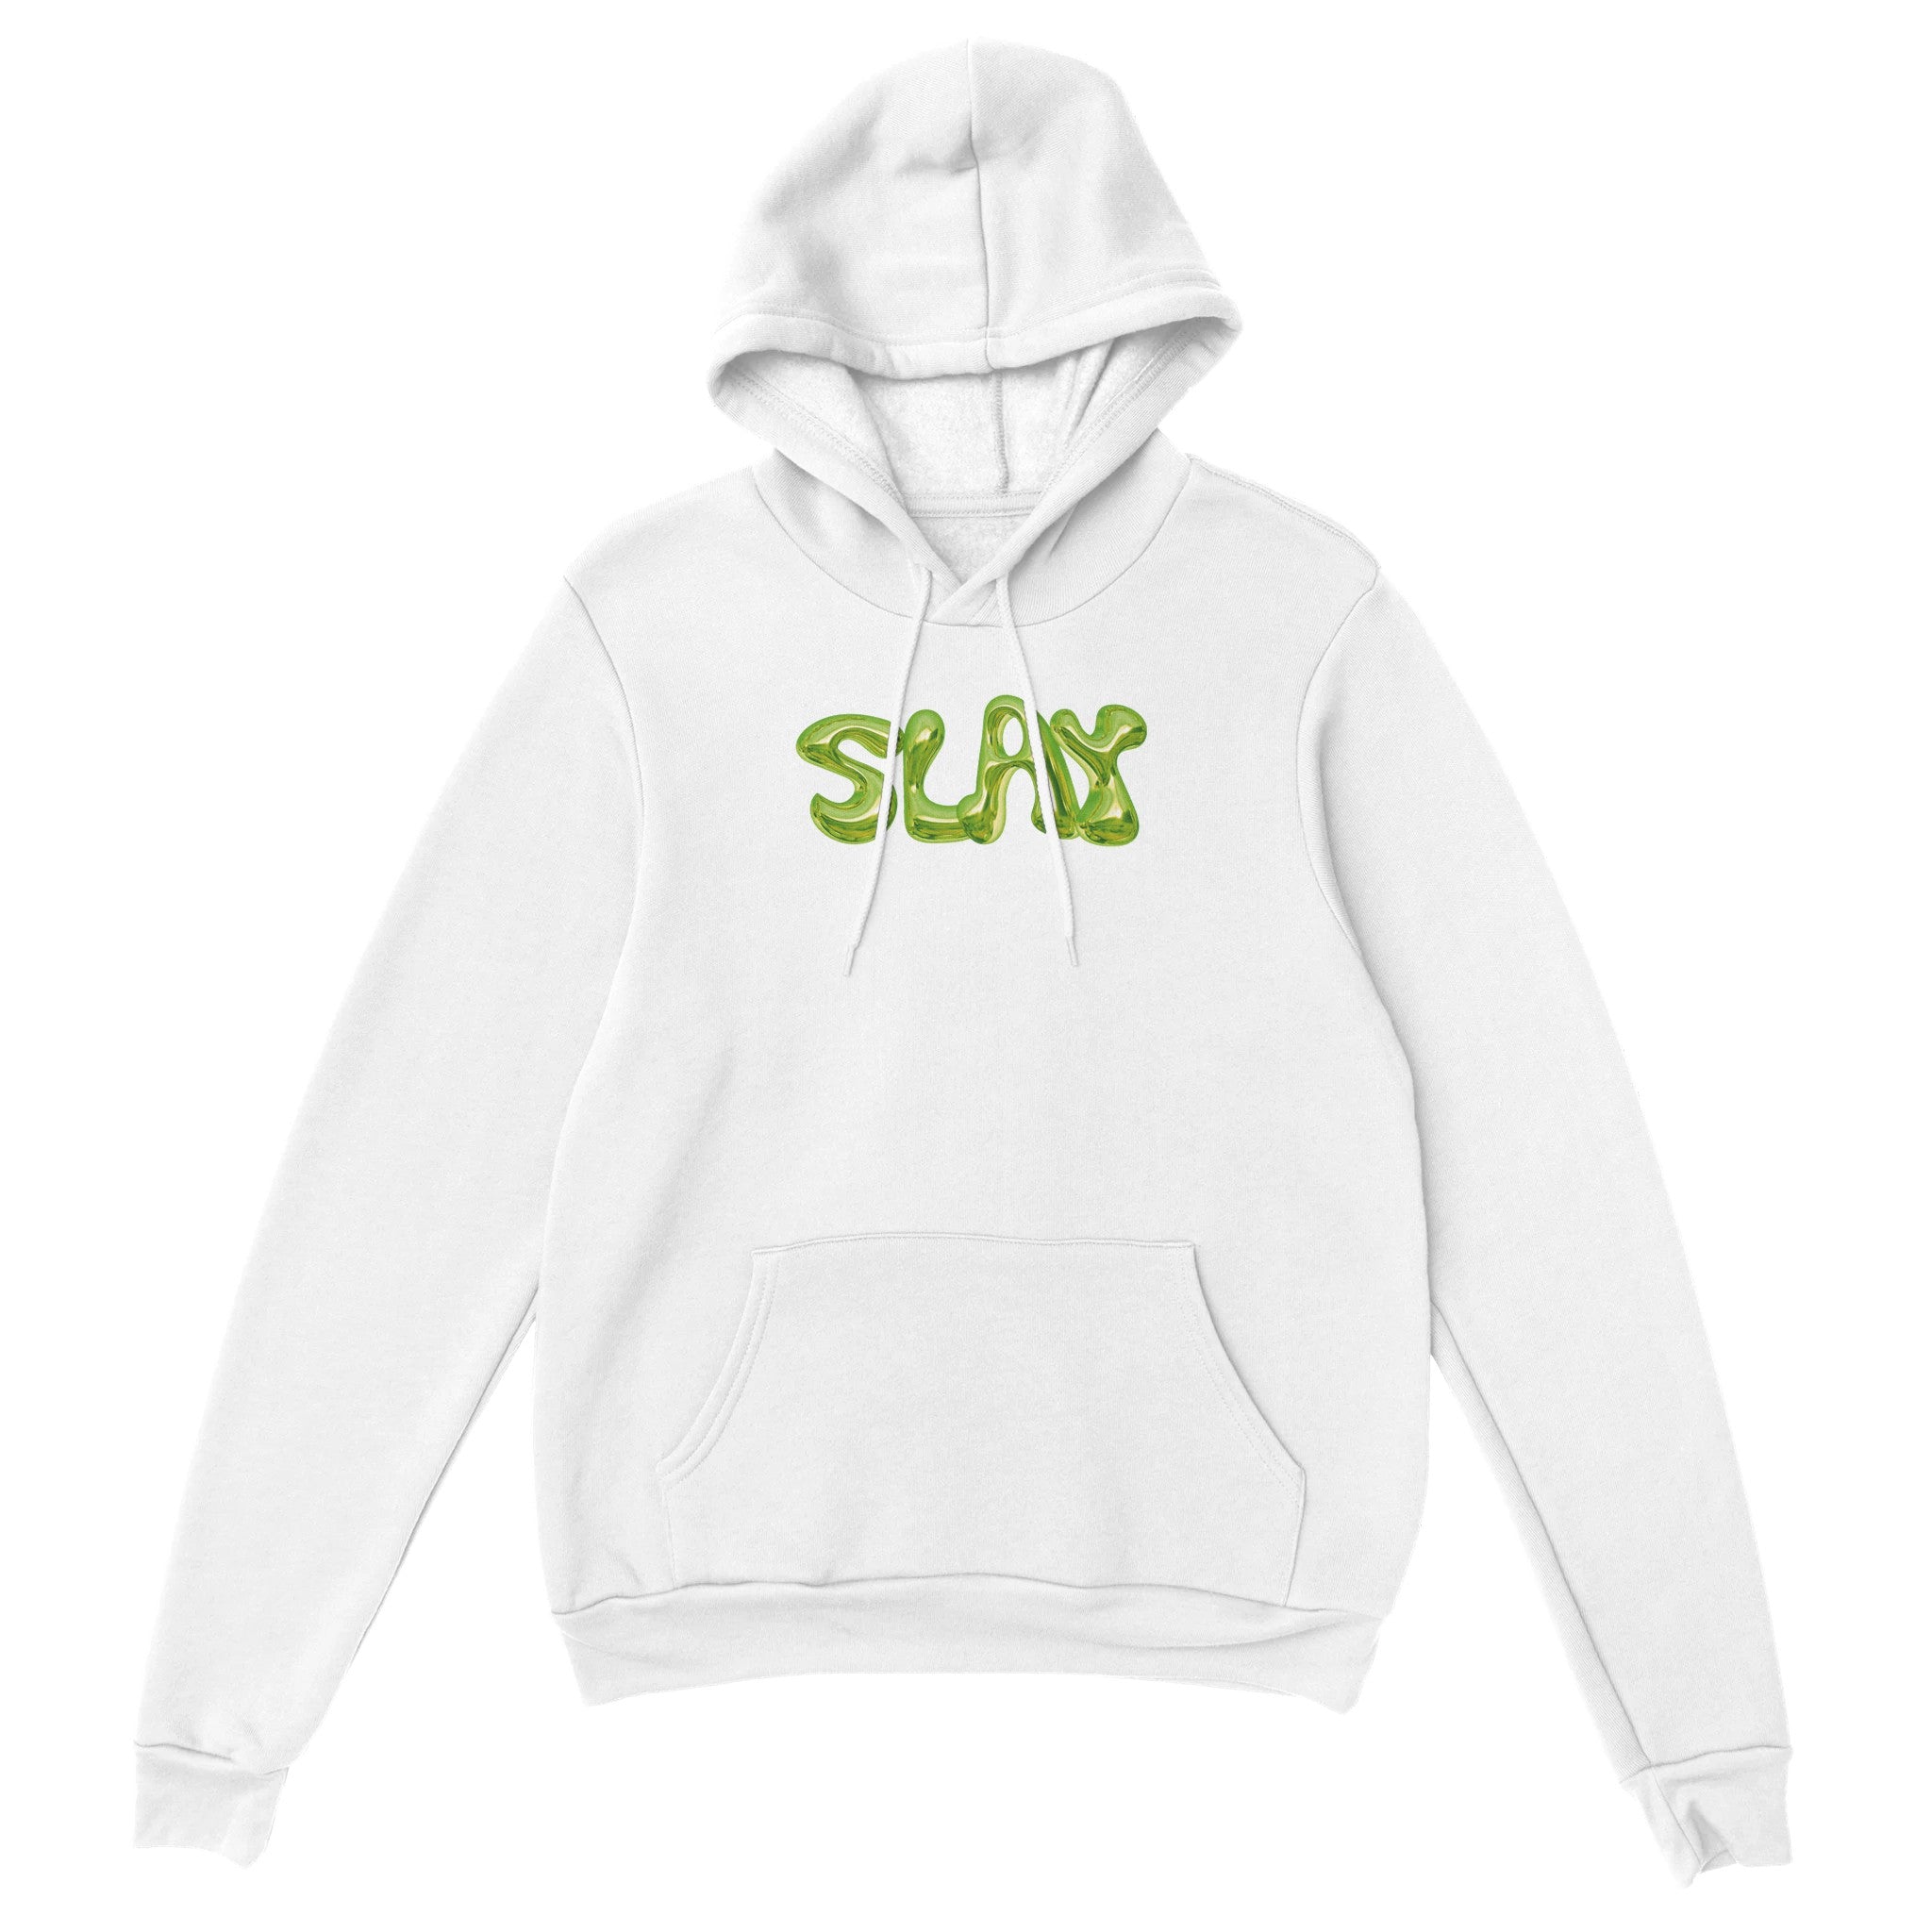 'Slay' hoodie - In Print We Trust